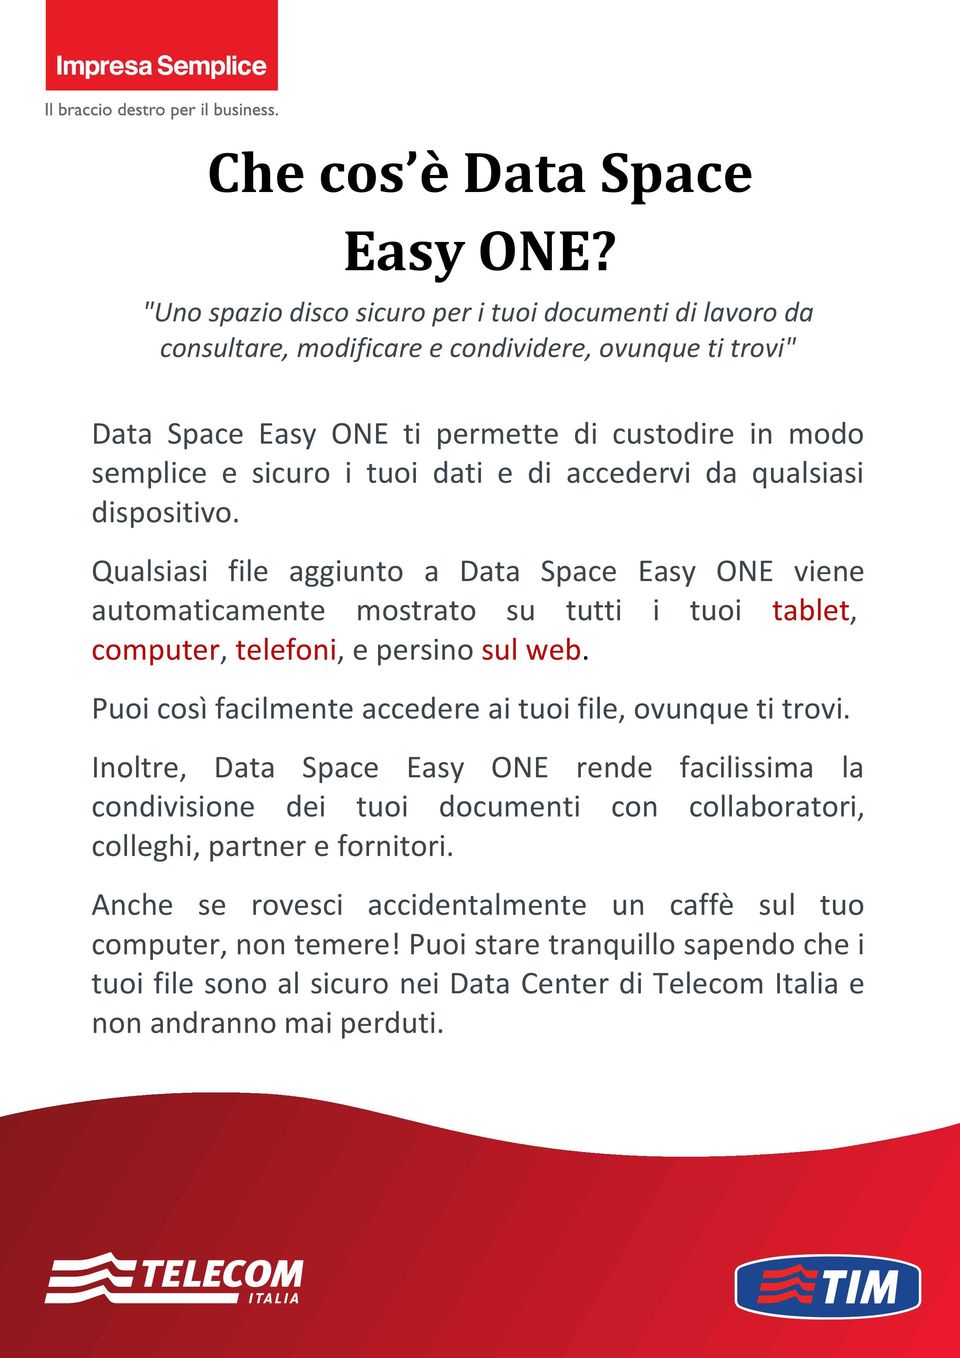 di accedervi da qualsiasi dispositivo. Qualsiasi file aggiunto a Data Space Easy ONE viene automaticamente mostrato su tutti i tuoi tablet, computer, telefoni, e persino sul web.